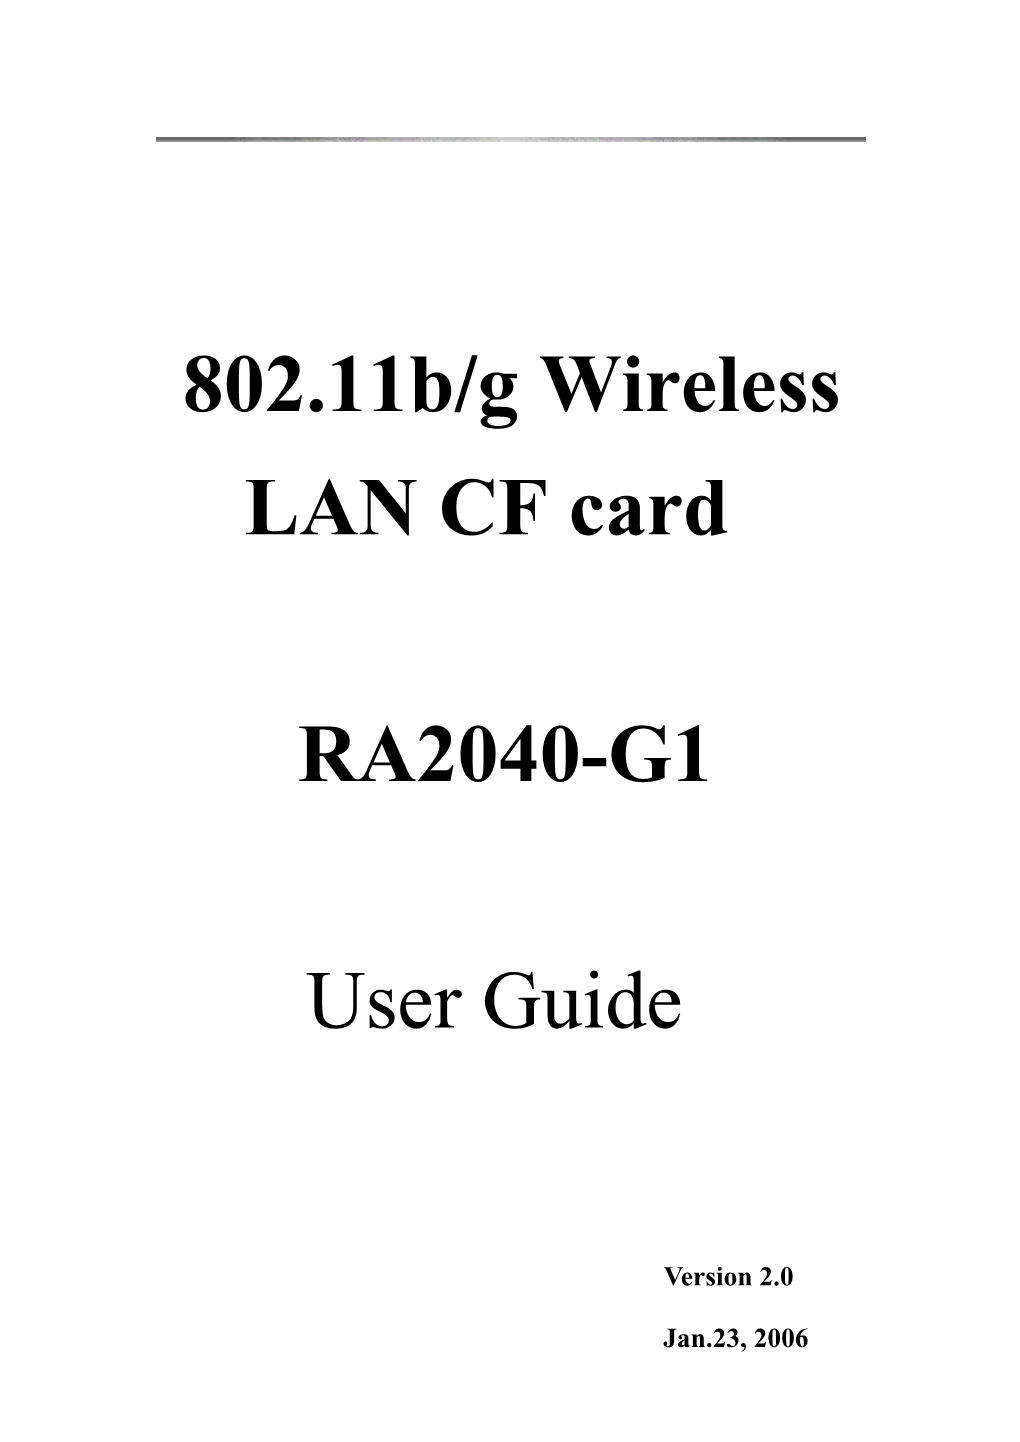 802.11B/G Wireless LAN CF Card RA2040-G1 User Guide